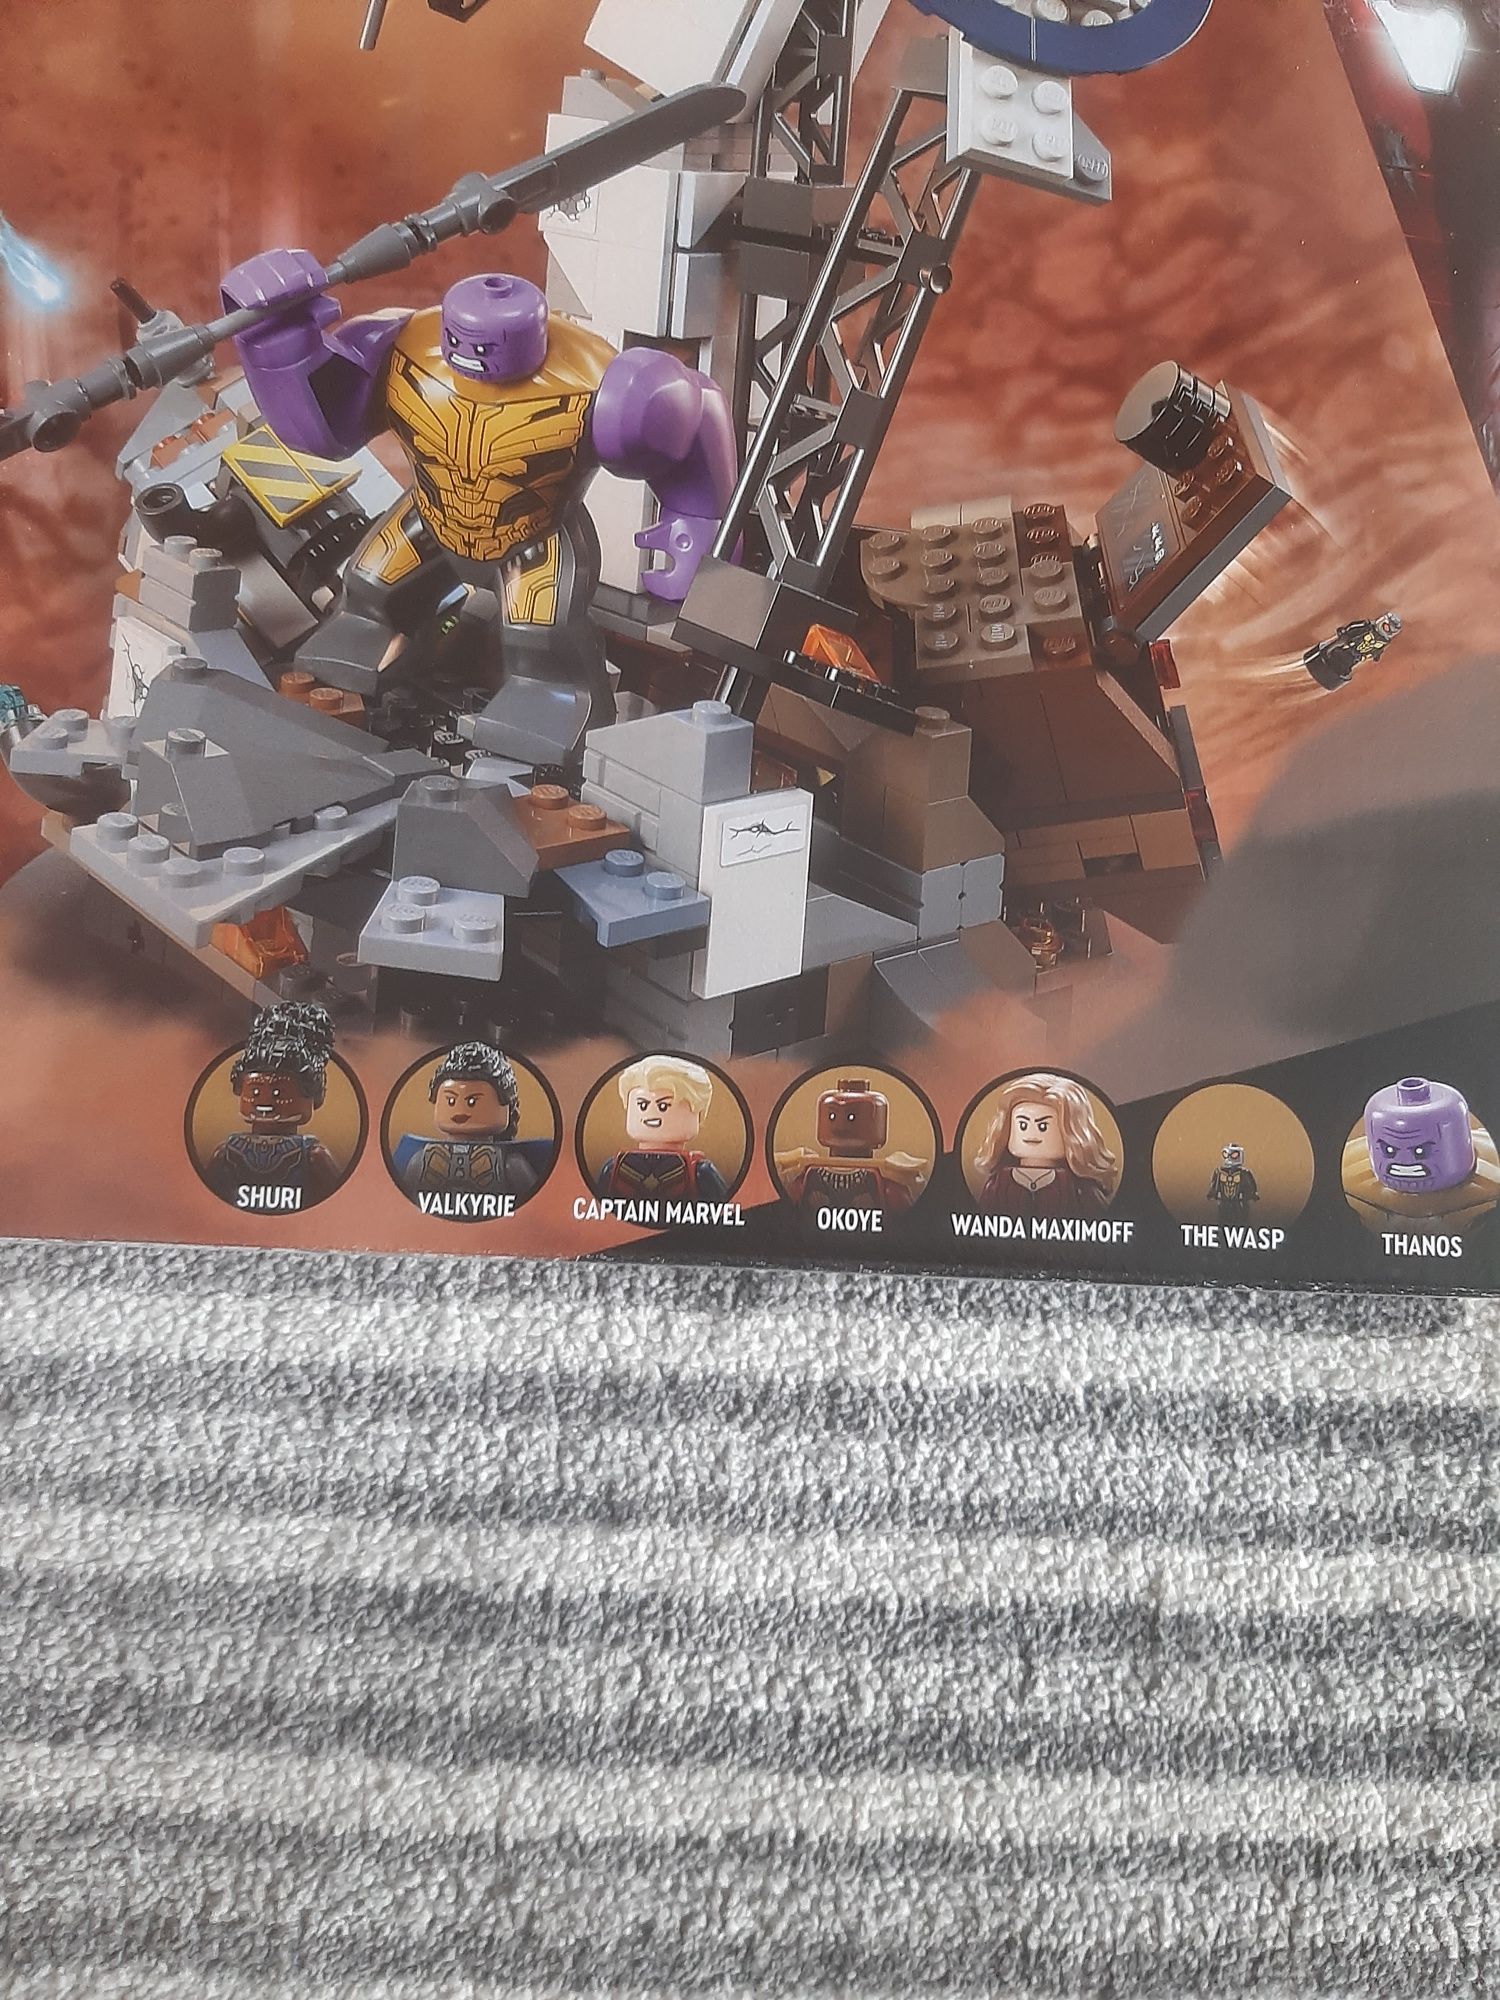 Lego 76266 Marvel koniec gry - ostateczna bitwa